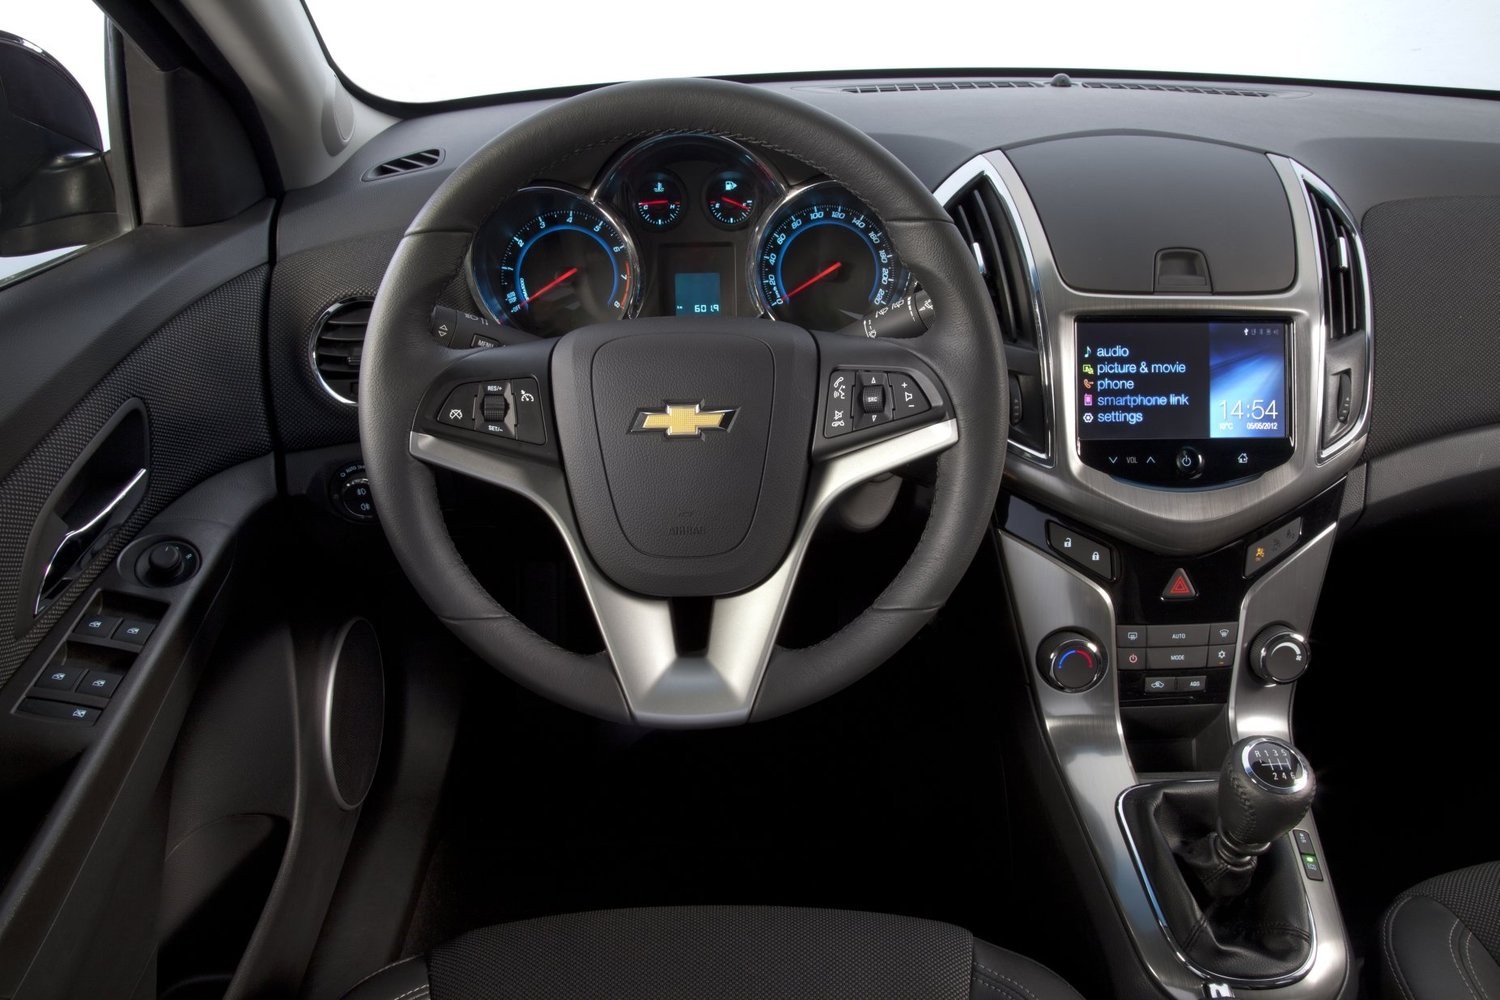 универсал Chevrolet Cruze 2012 - 2015г выпуска модификация 1.4 AT (140 л.с.)